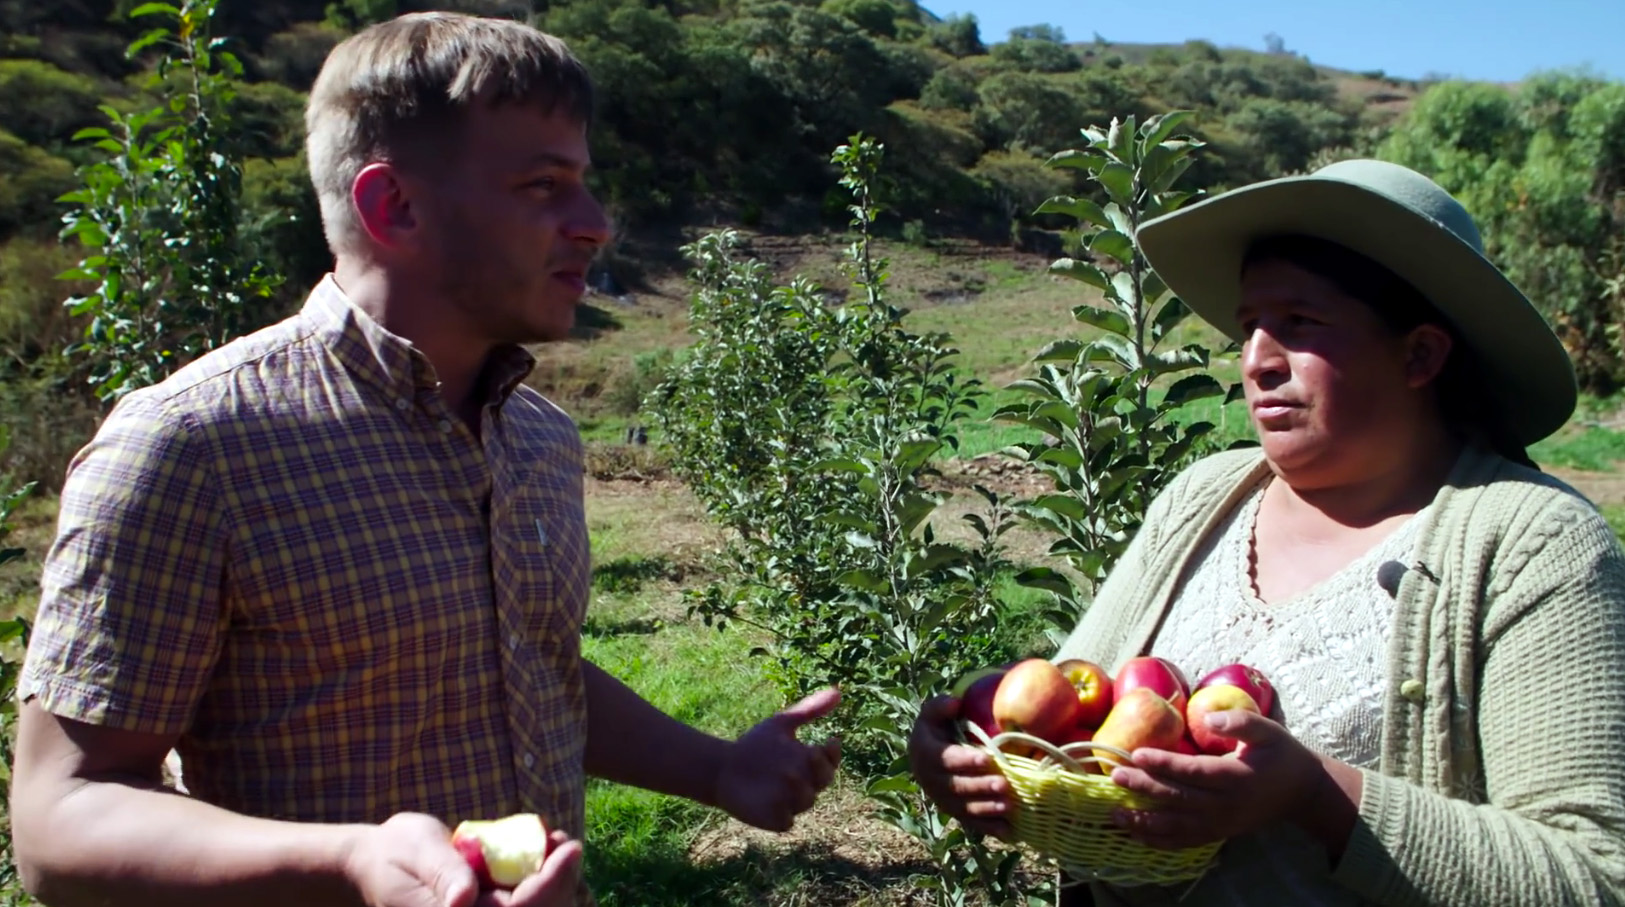 Standbild aus dem BMZ-Video "Der Klimawandel und die Apfelernte in Bolivien". Der Schauspieler Tom Wlaschiha unterhält sich mit einer bolivianischen Bäuerin, im Hintergrund eine Apfelplantage.